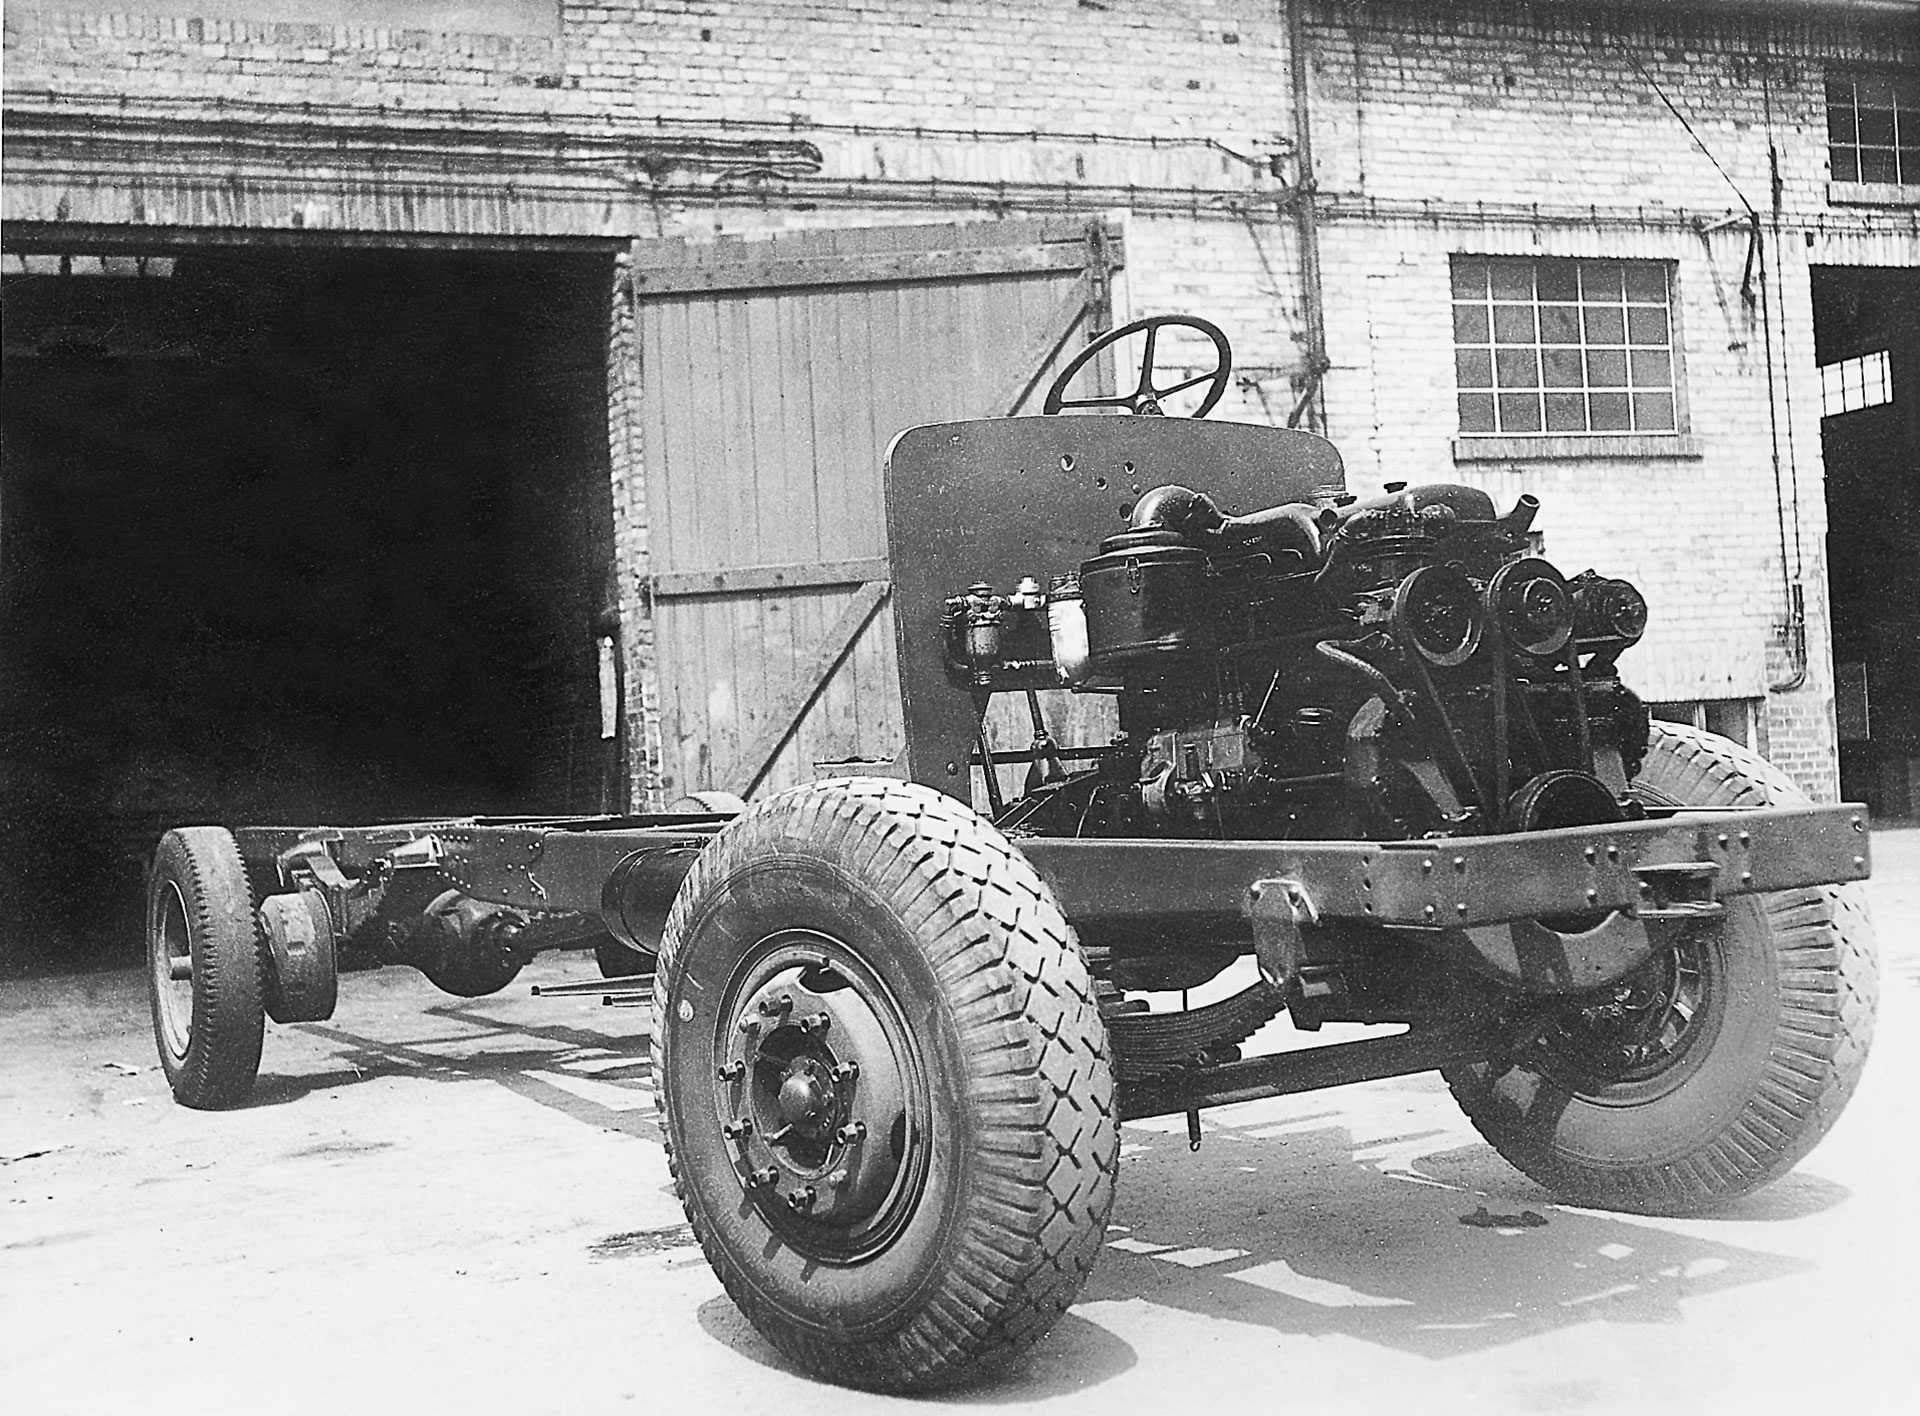 Fahrzeug von 1951